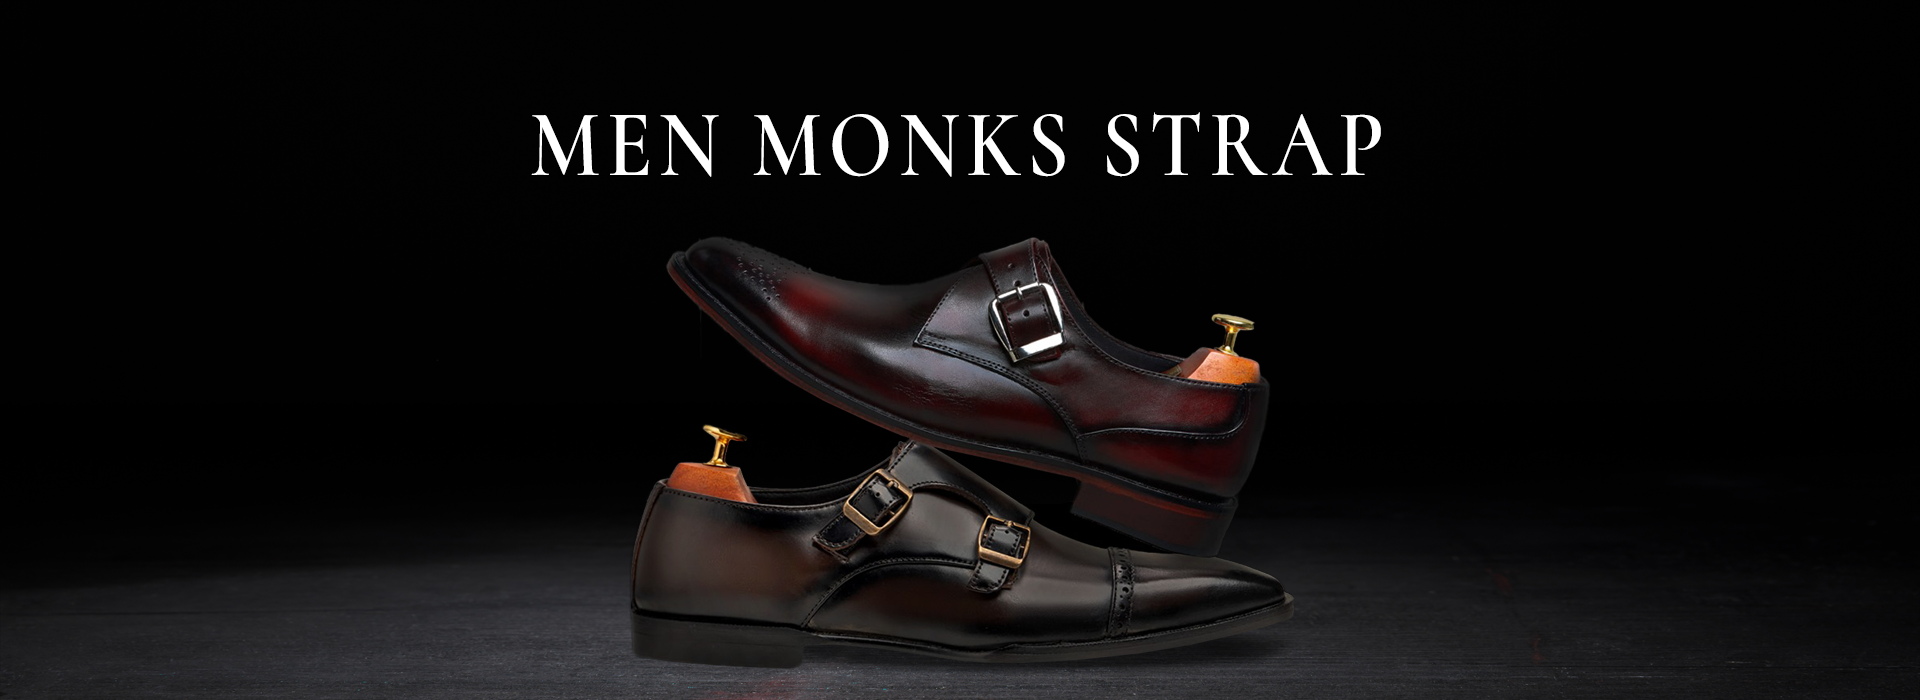 Men's Monk Strap Premium Formal Leather Shoes